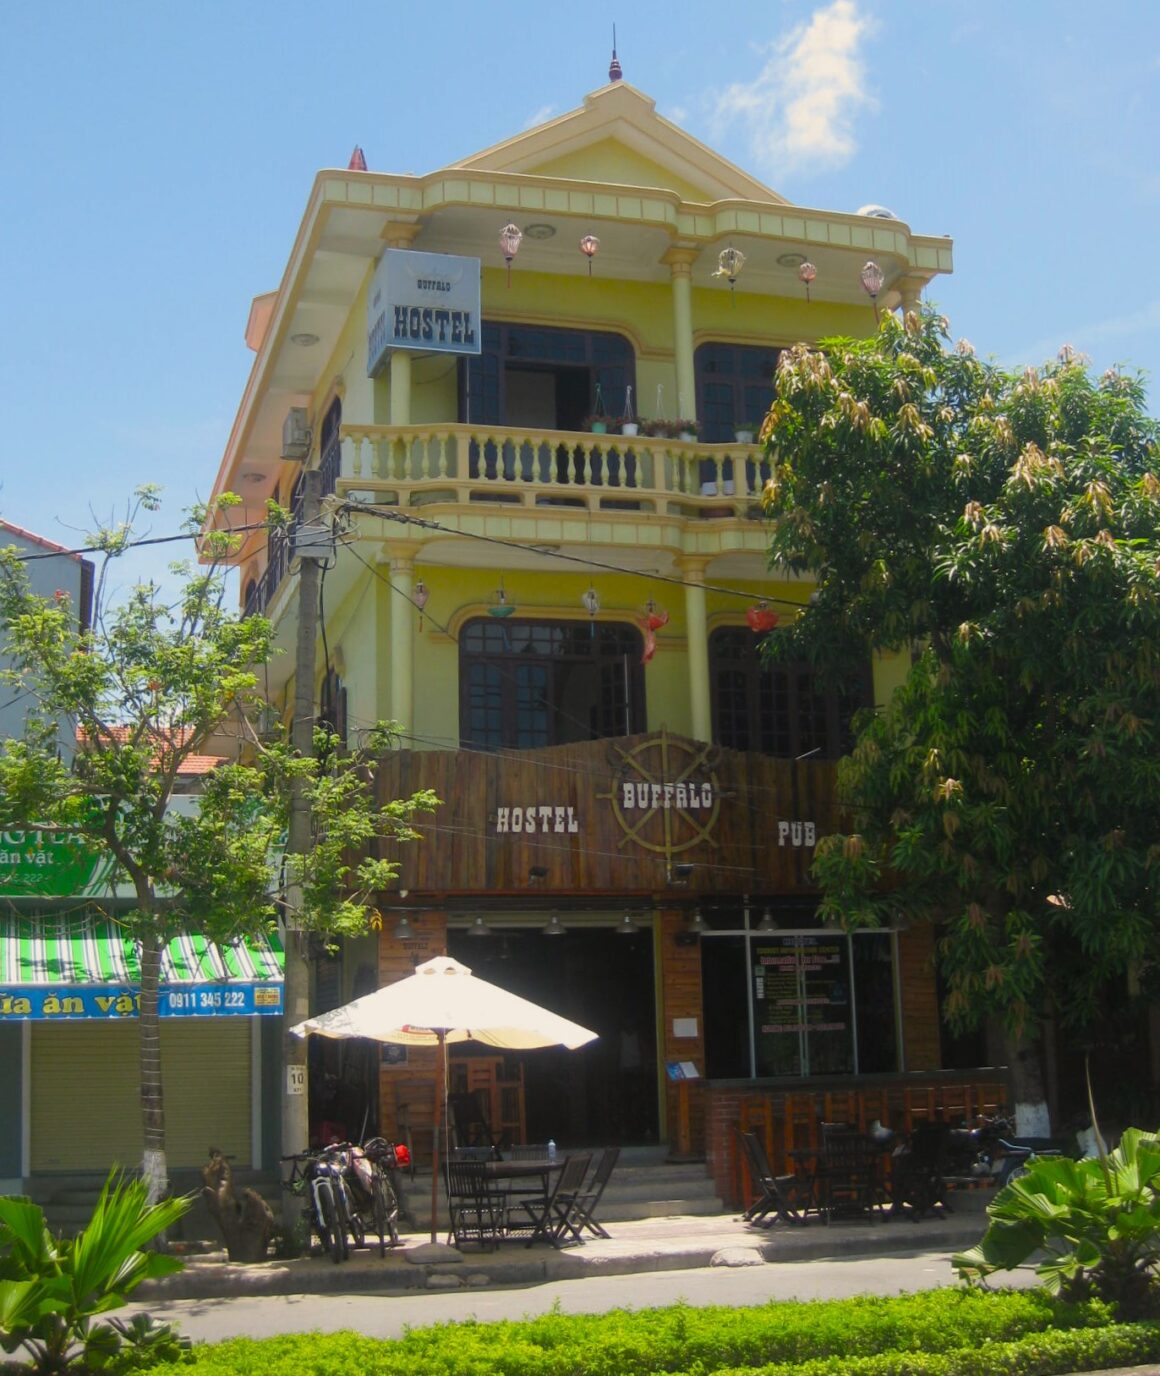 Koloniales, dreistöckiges Gebäude an einer Straße in Dong Hoi. Im Vordergrund eine Terrasse mit Regenschirm. Aufschrift auf Holz im Western-Stil "Hostel Buffalo Pub".